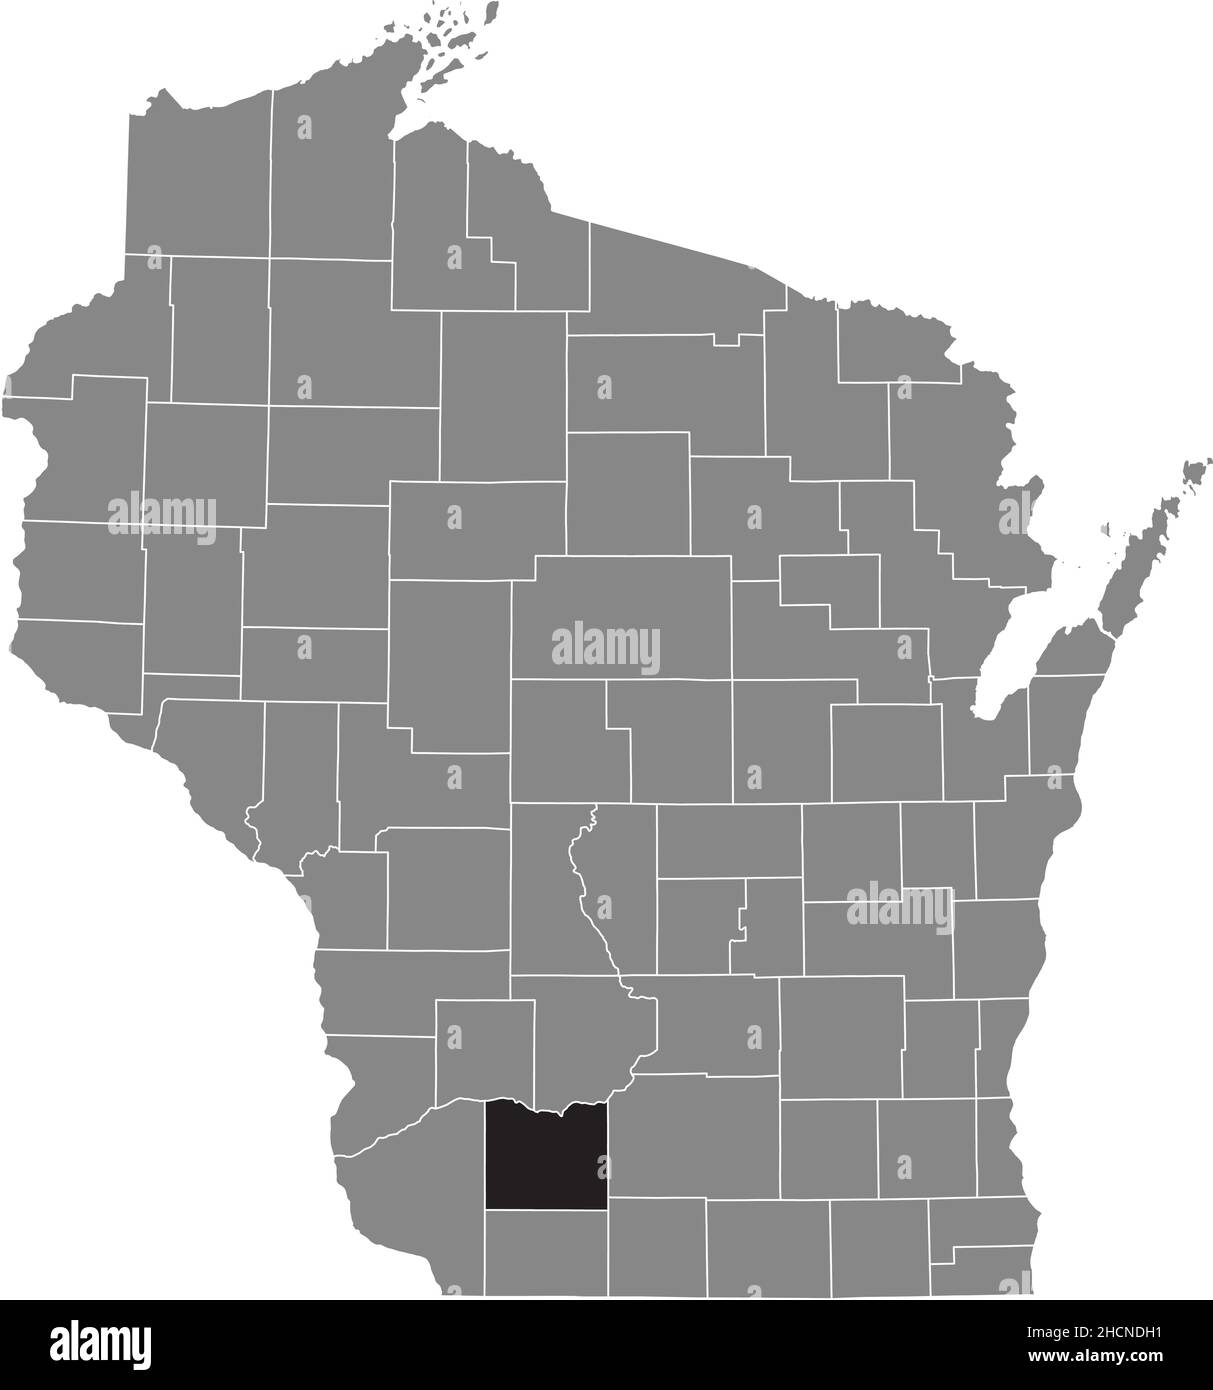 Schwarz markierte Standortkarte des Iowa County in grauer Verwaltungskarte des Bundesstaates Wisconsin, USA Stock Vektor